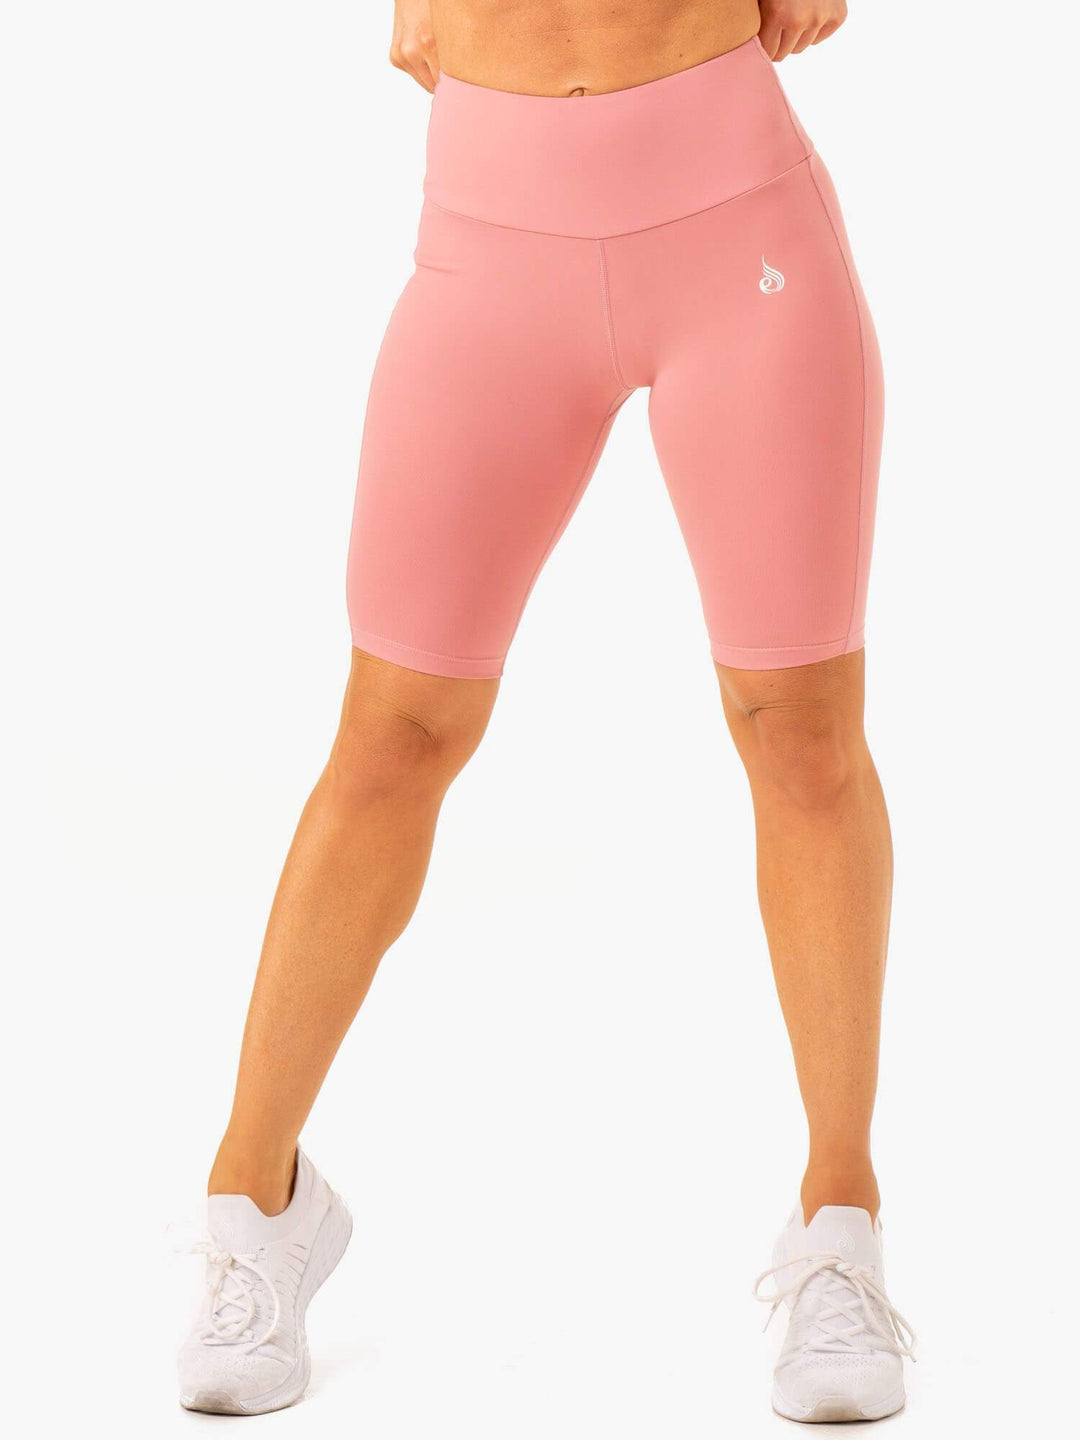 Action Bike Short - Blush Pink Clothing Ryderwear 